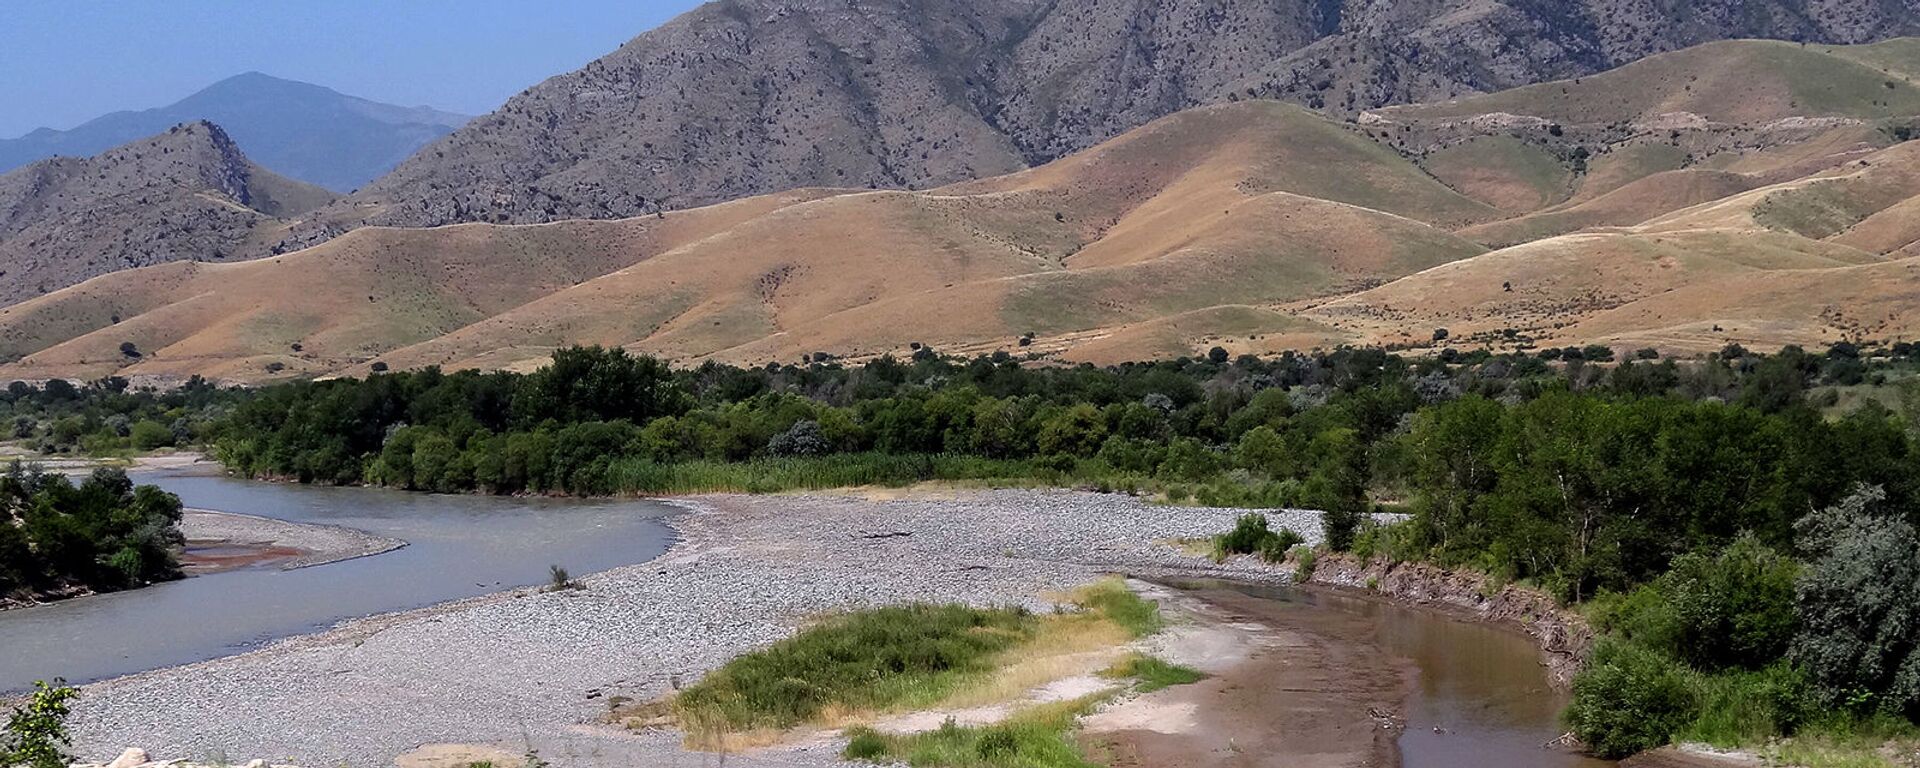 Река Аракс с границами между Карабахом, Ираном и Азербайджаном - Sputnik Армения, 1920, 14.11.2021